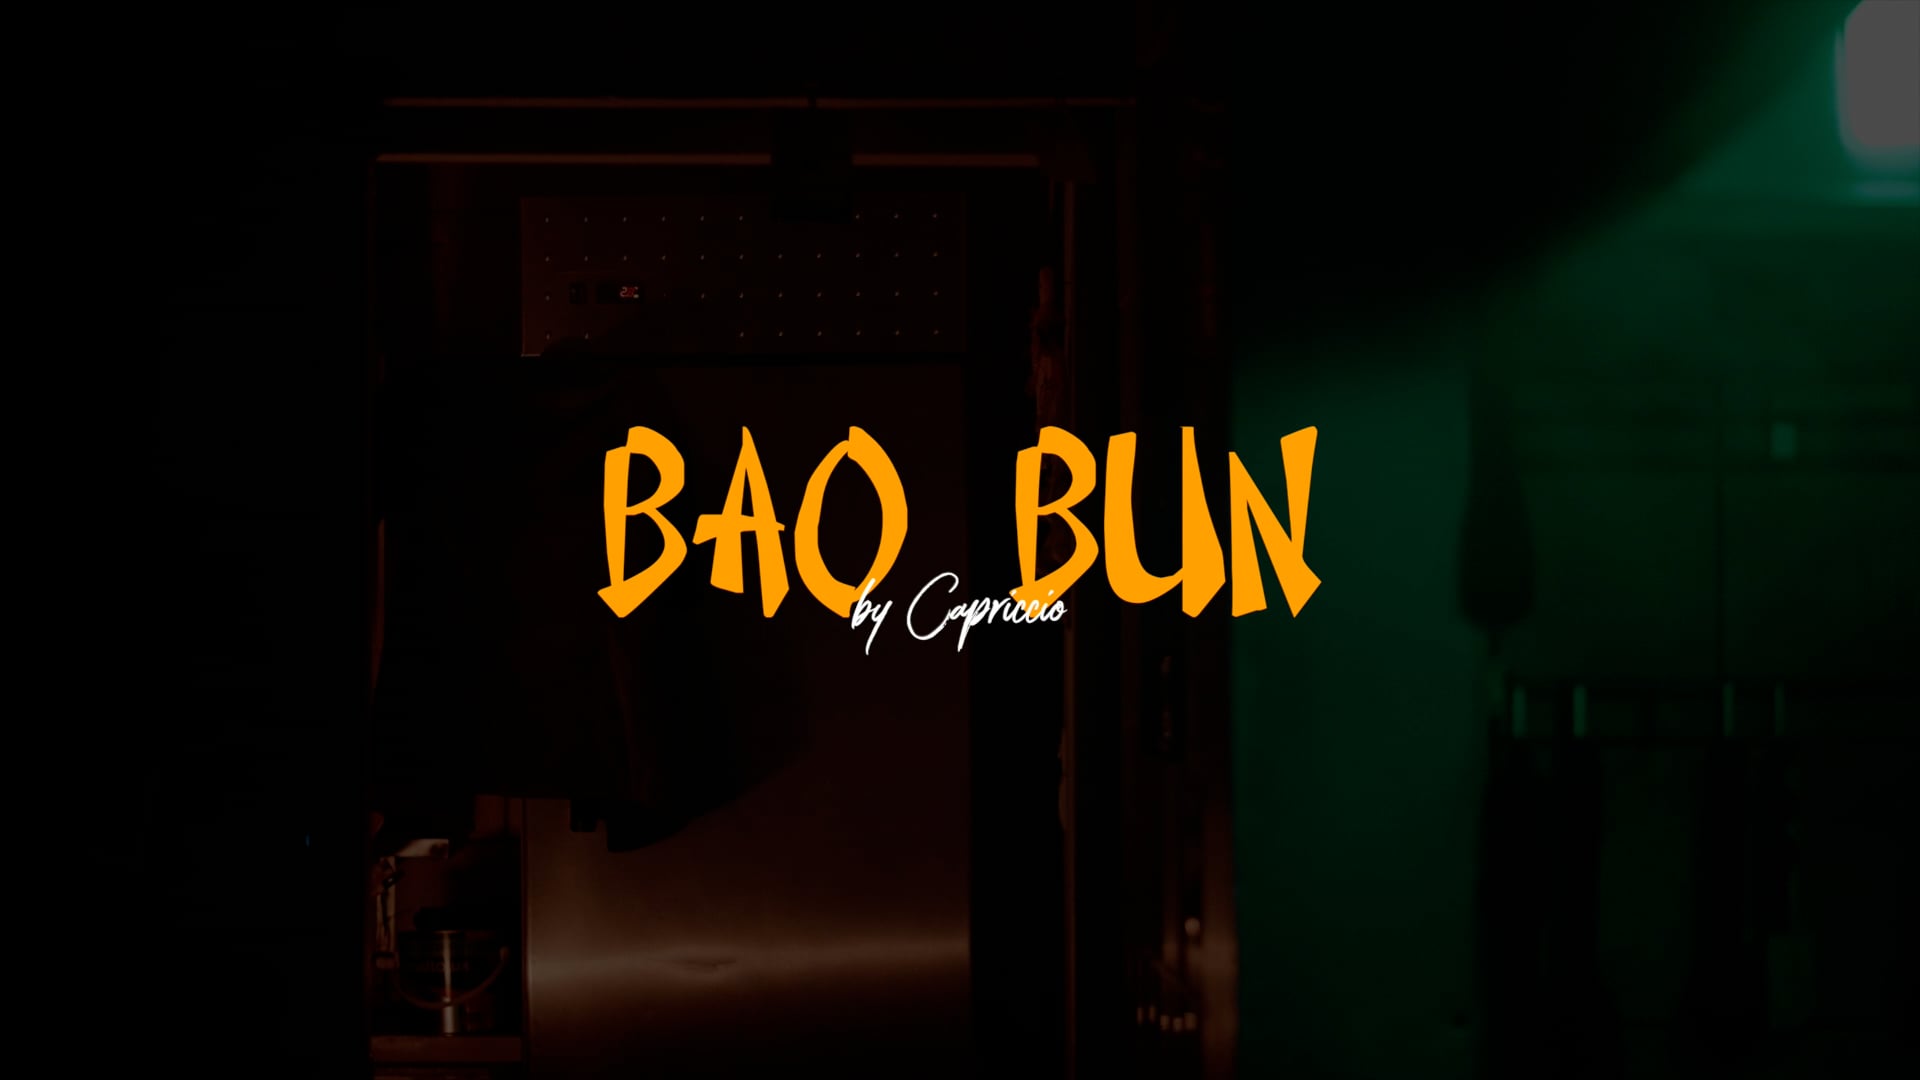 Bao Bun by Capriccio